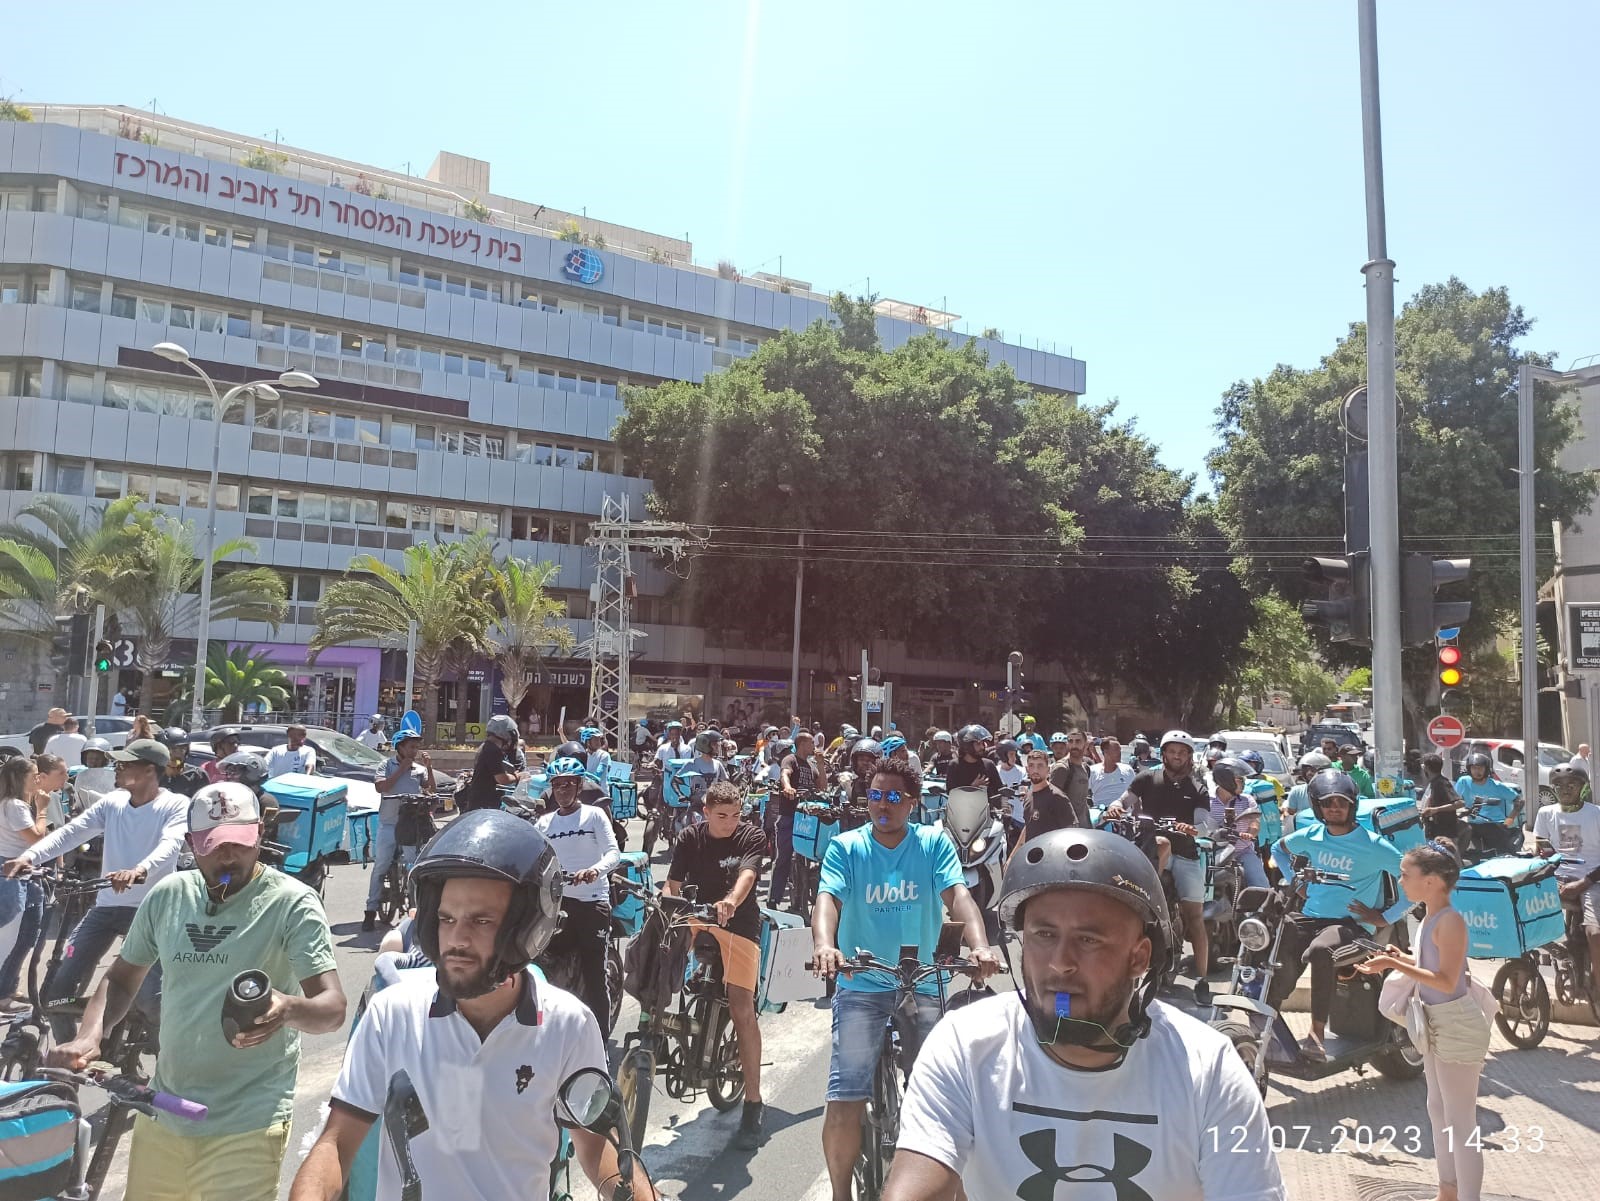 הפגנת שליחי וולט בתל אביב במחאה על מודל התמחור הדינמי של החברה (צילום: תומר זליקוביץ')